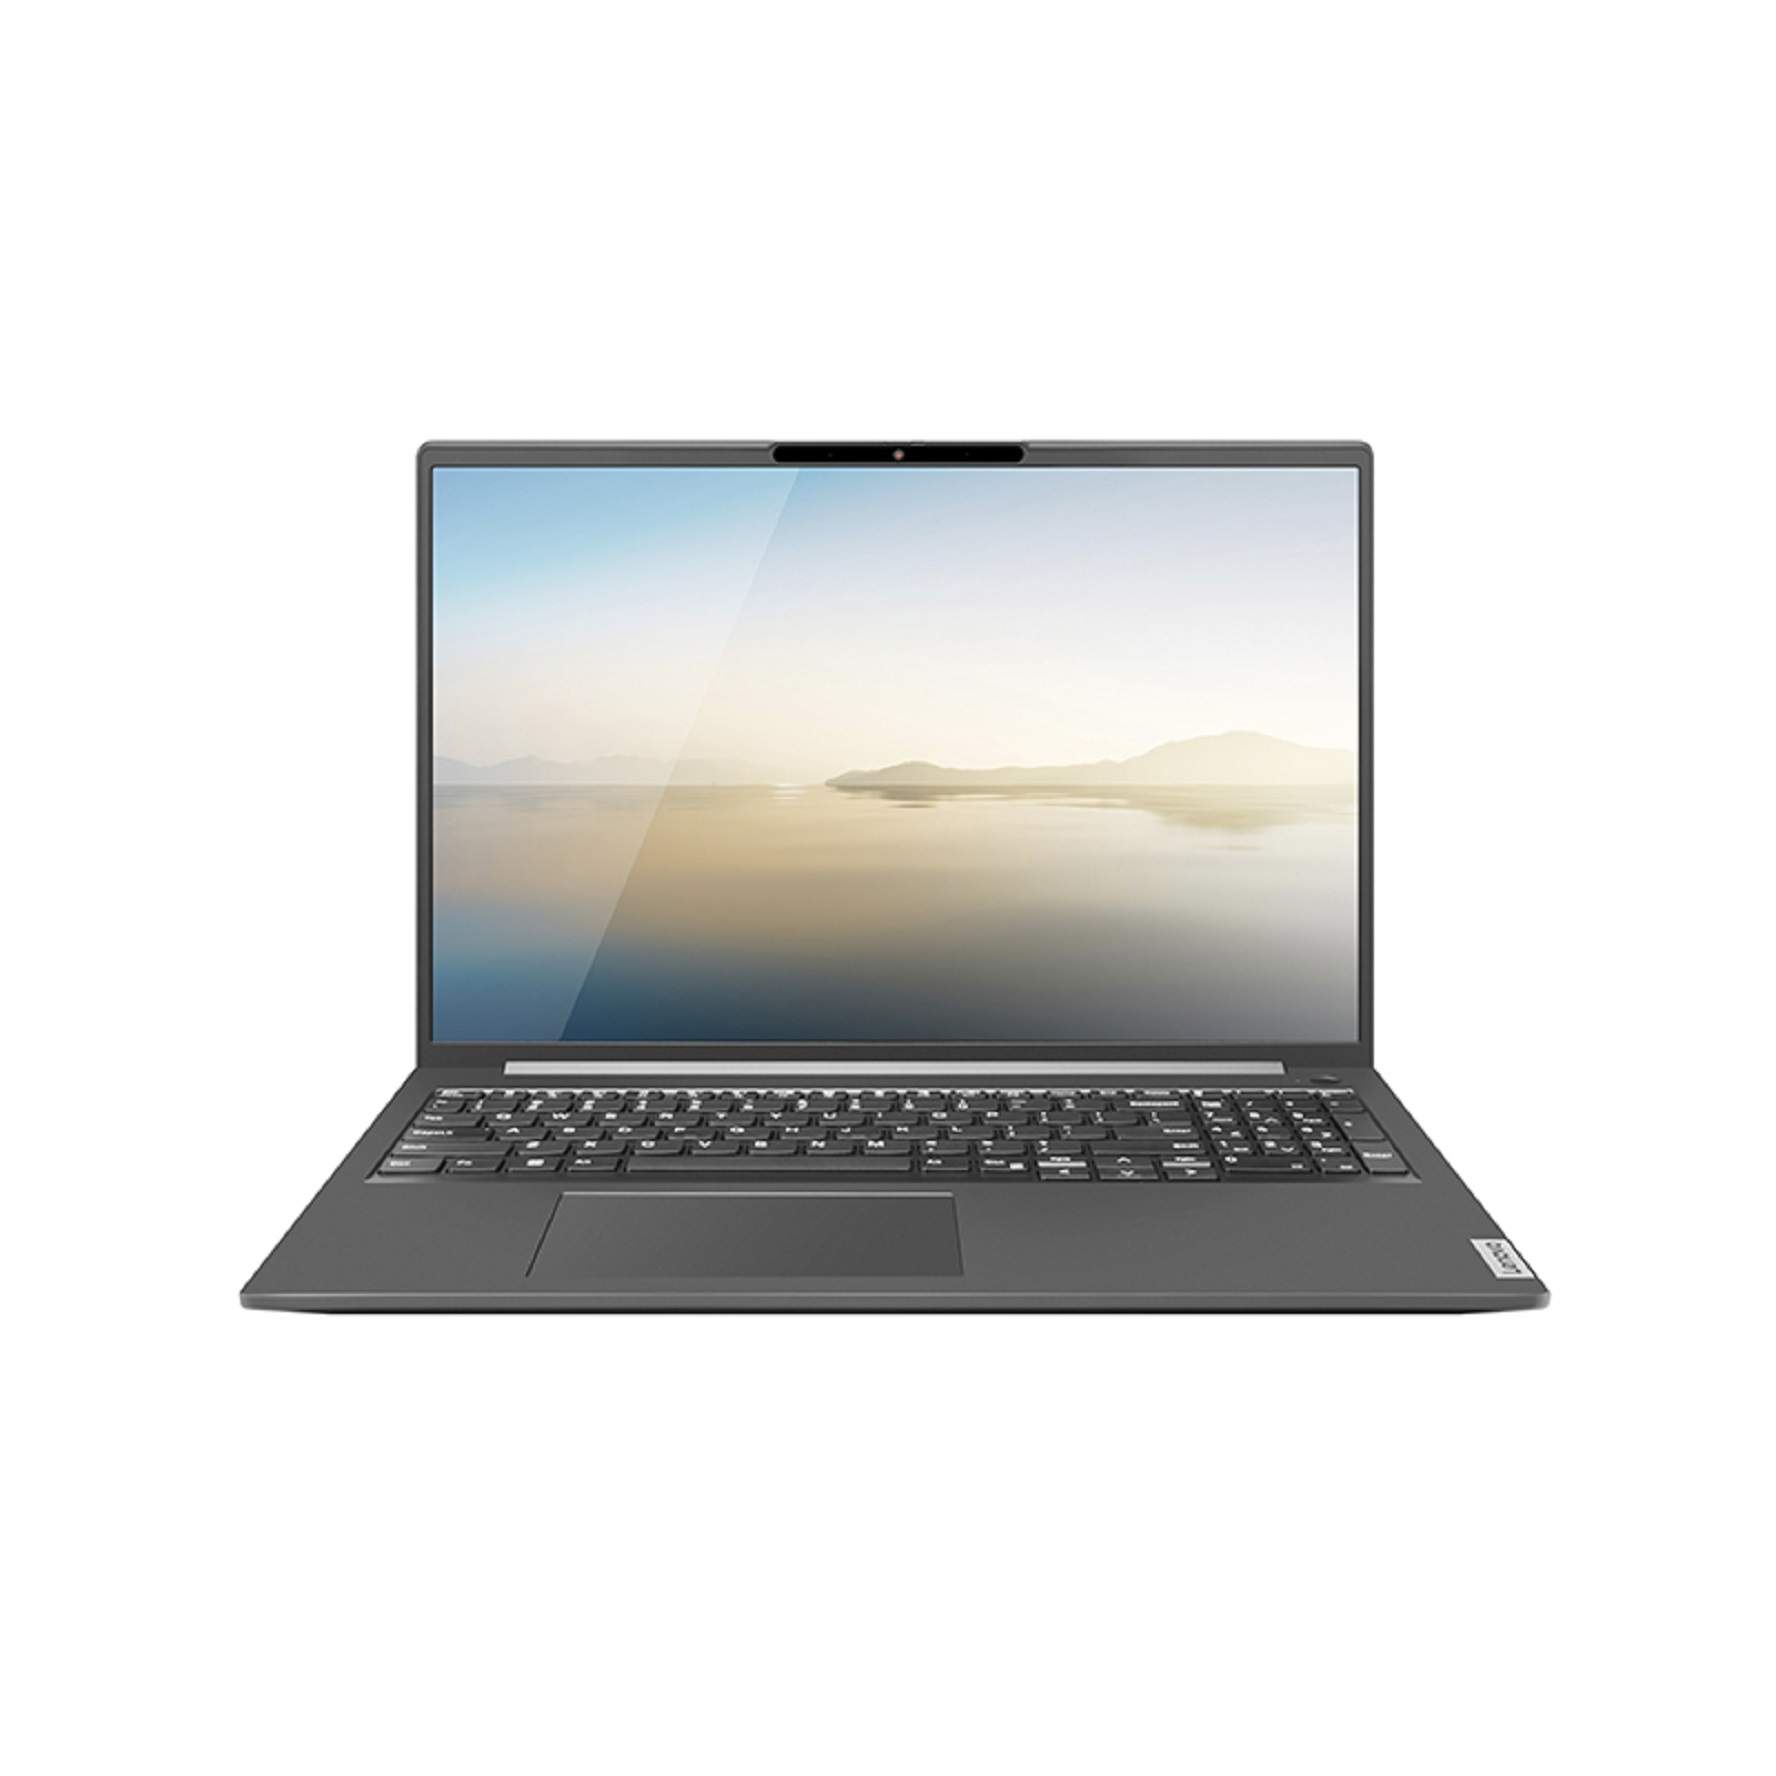 Ноутбук LENOVO ZhaoYang X5-16 ABP серый (0167563849), купить в Москве, цены в интернет-магазинах на Мегамаркет